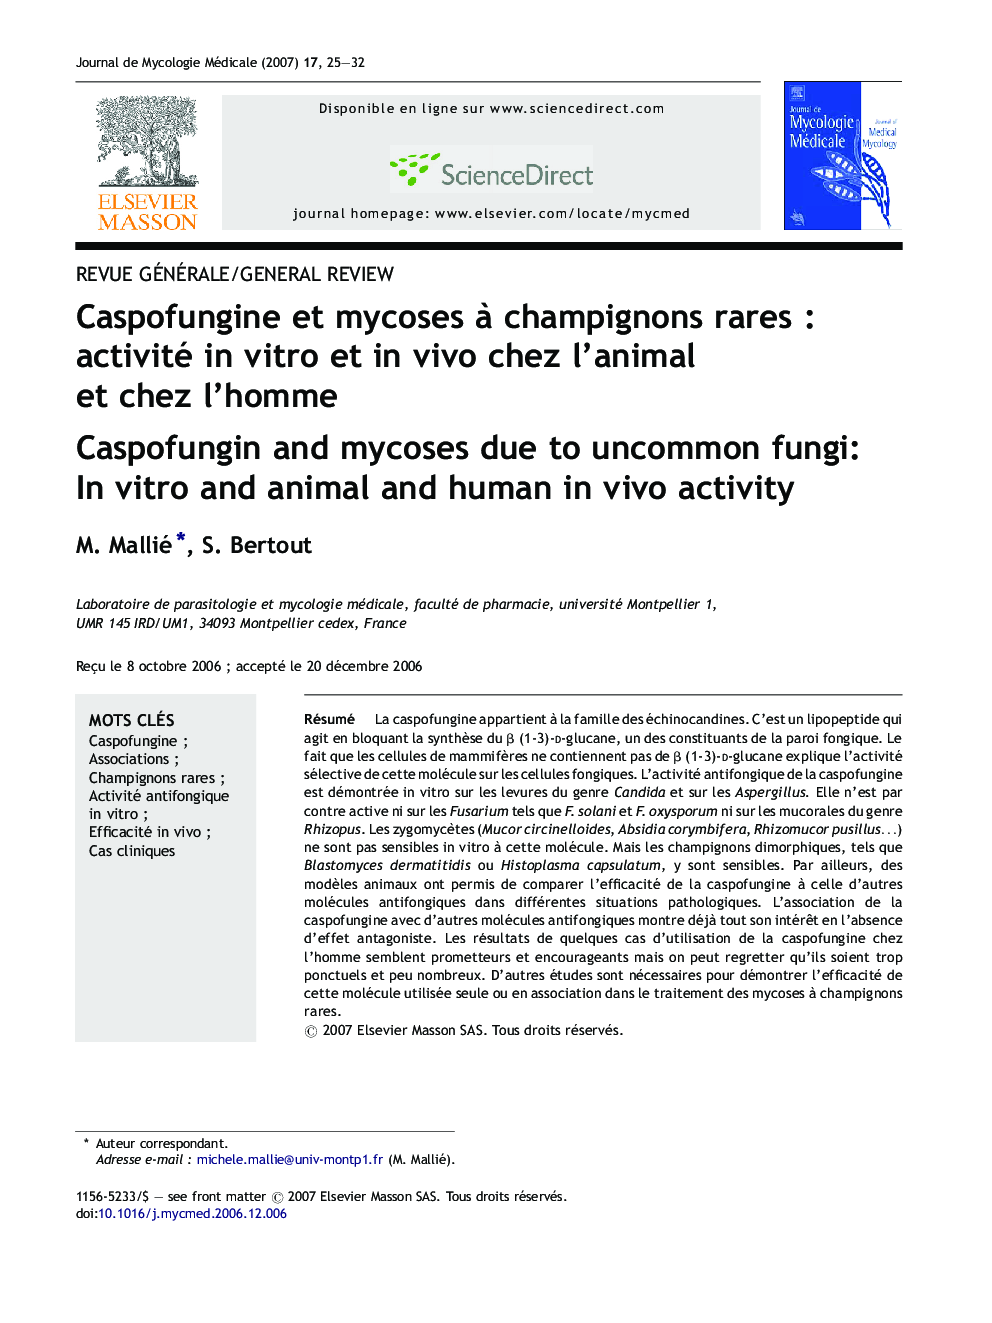 Caspofungine et mycoses à champignons rares : activité in vitro et in vivo chez l’animal et chez l’homme